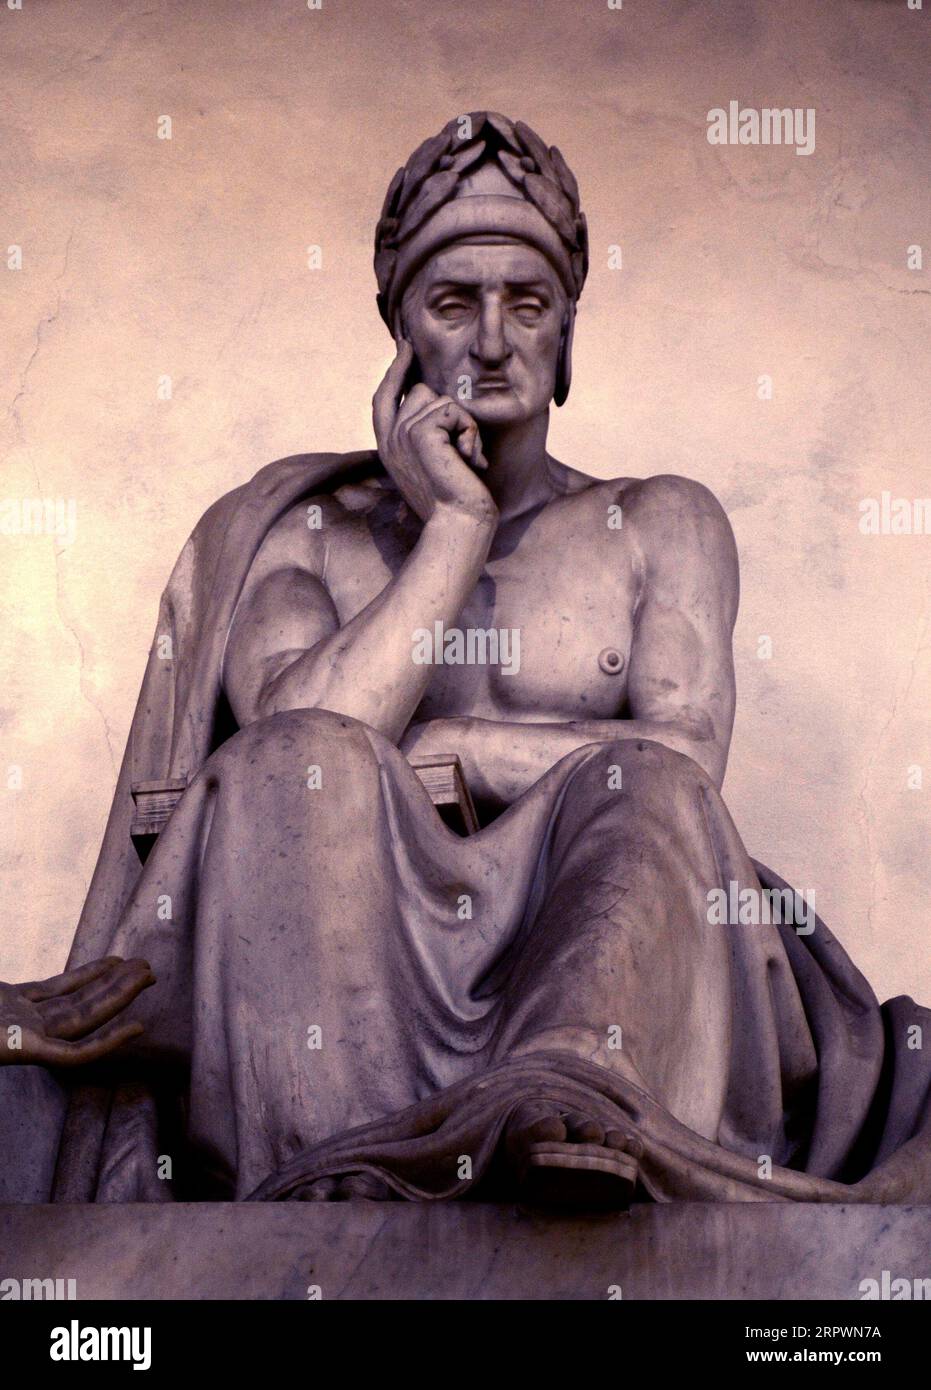 Una statua in marmo del 1830 del poeta italiano Dante Alighieri (colorata digitalmente), scolpita da Stefano Ricci, a Firenze (vedi informazioni aggiuntive). Foto Stock